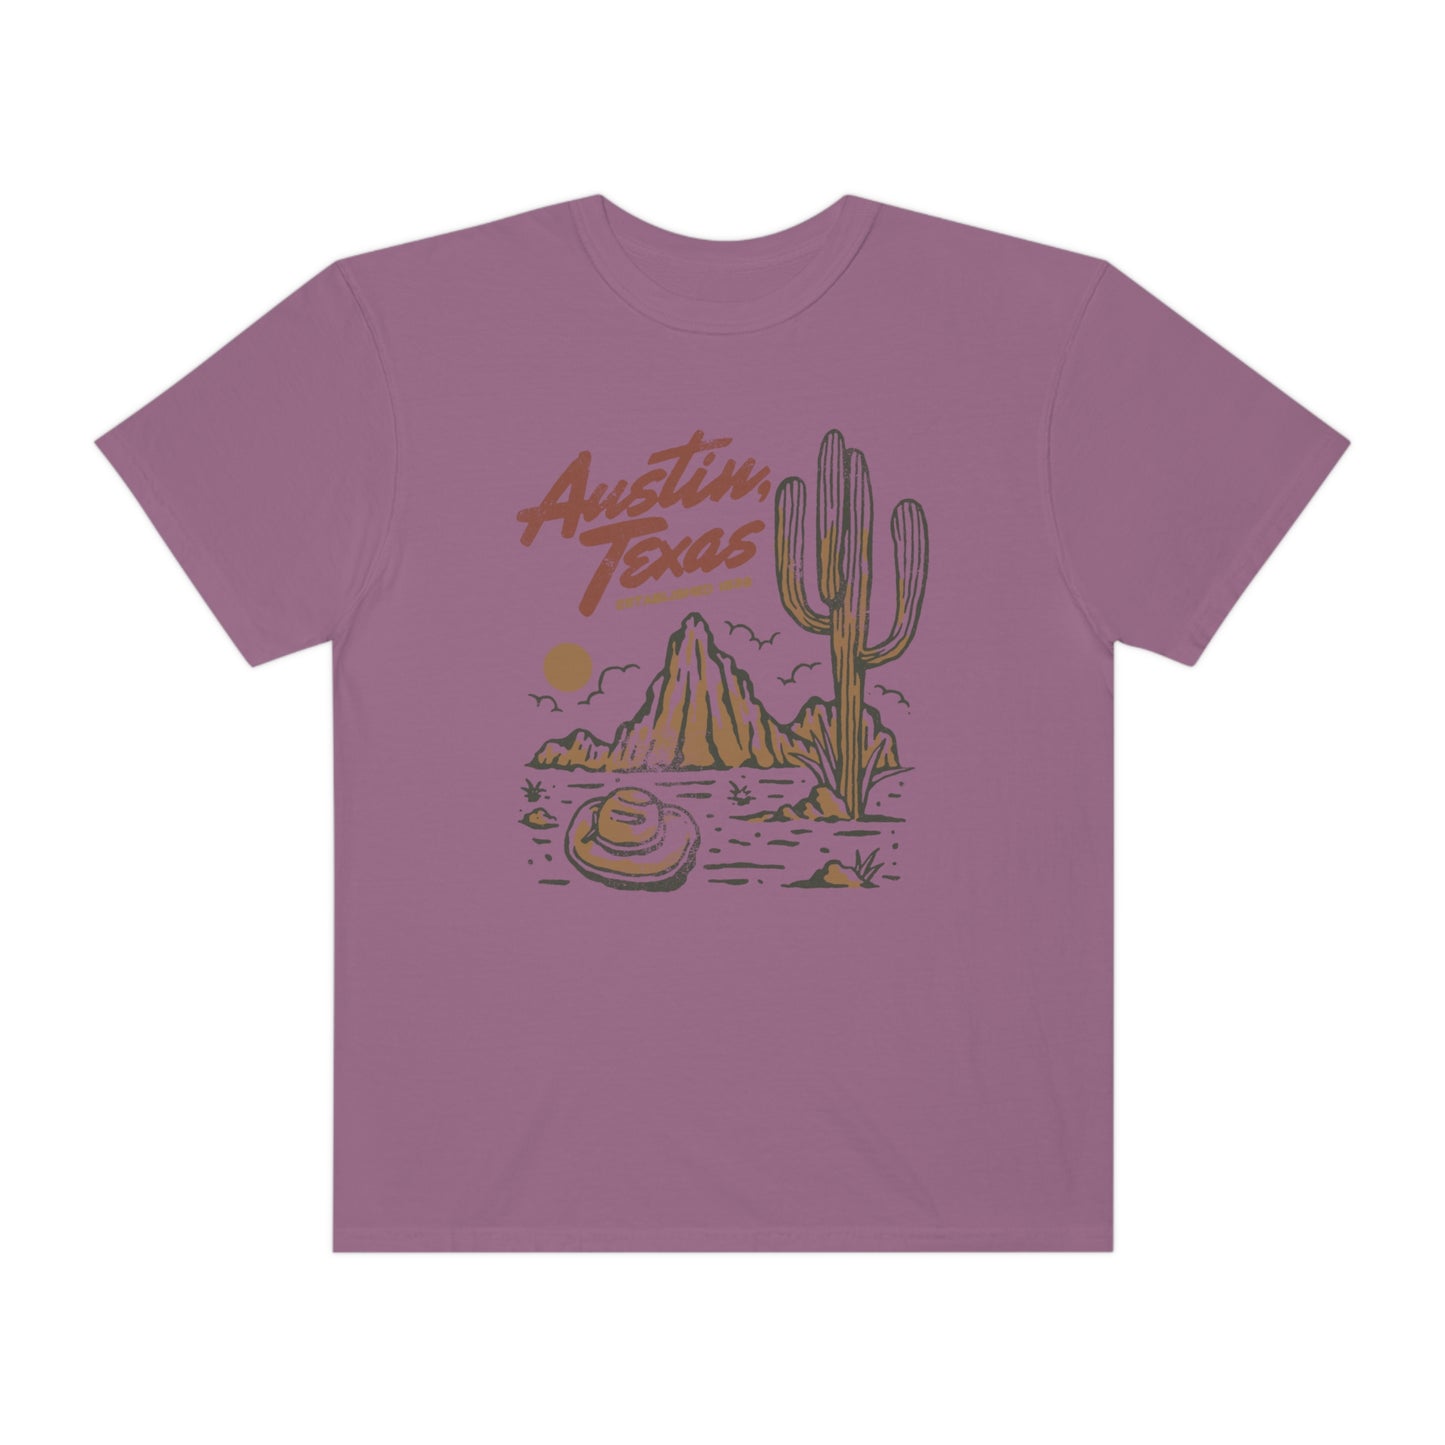 Austin Texas Shirt